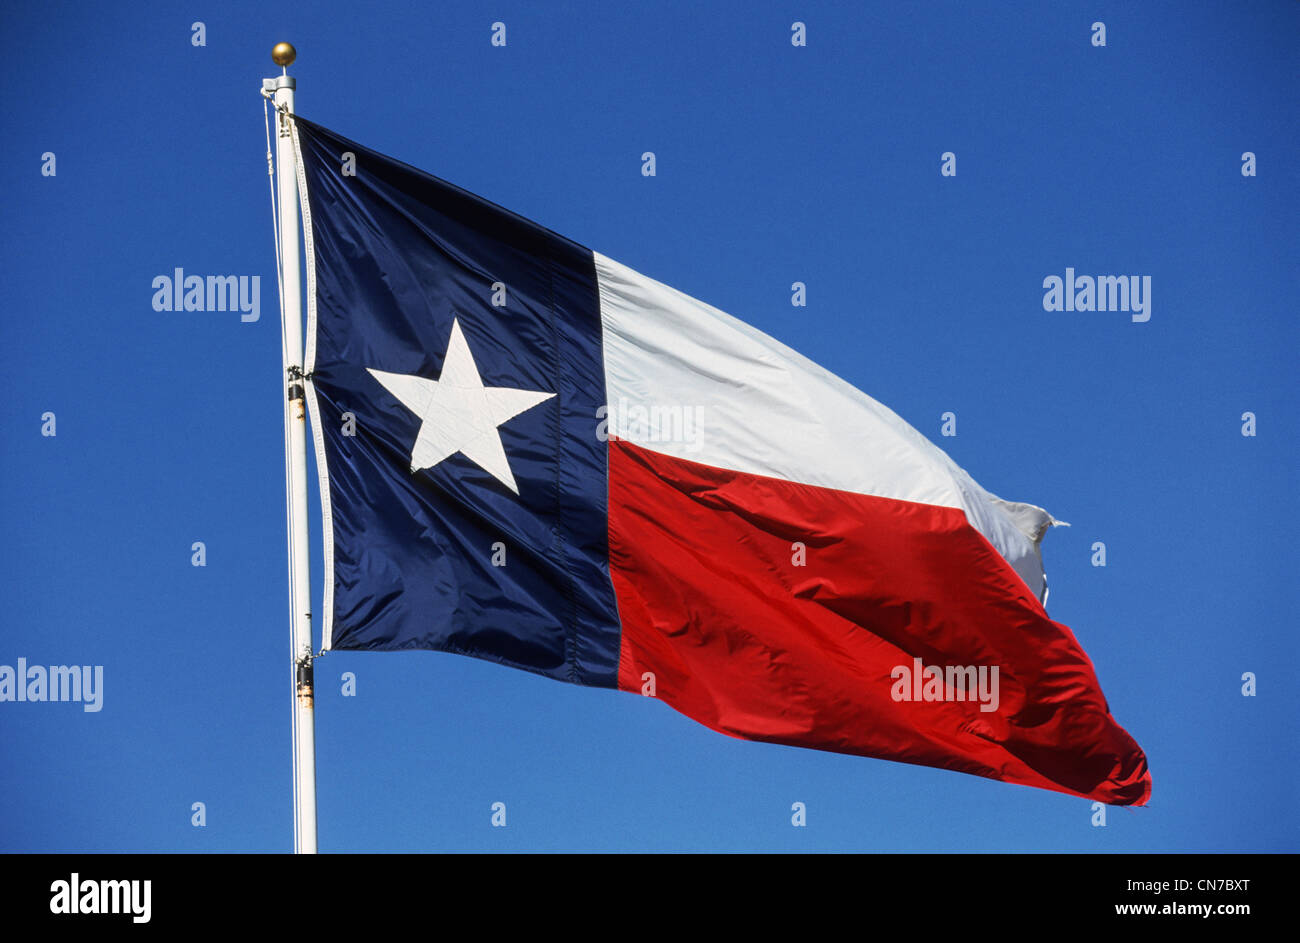 Texas State Flag, Austin, Texas, USA Stock Photo